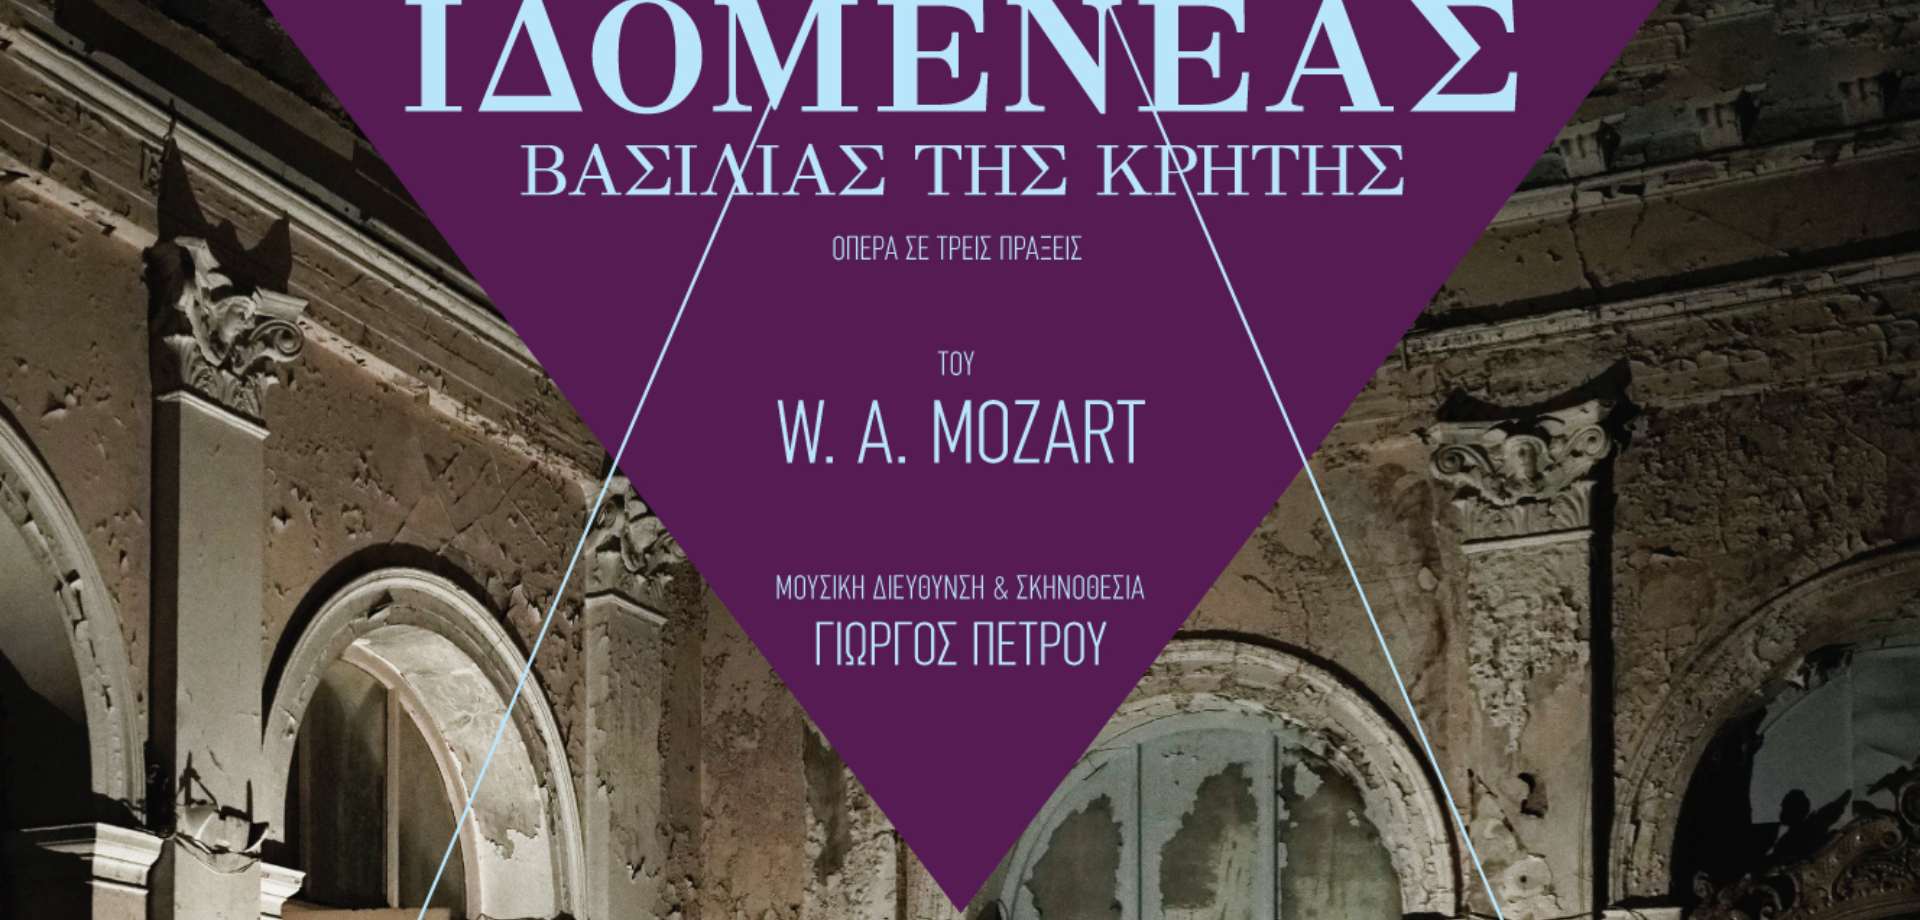 _Ιδομενέας_ του Mozart ανεβαίνει στο Δημοτικό Θέατρο Ολύμπια